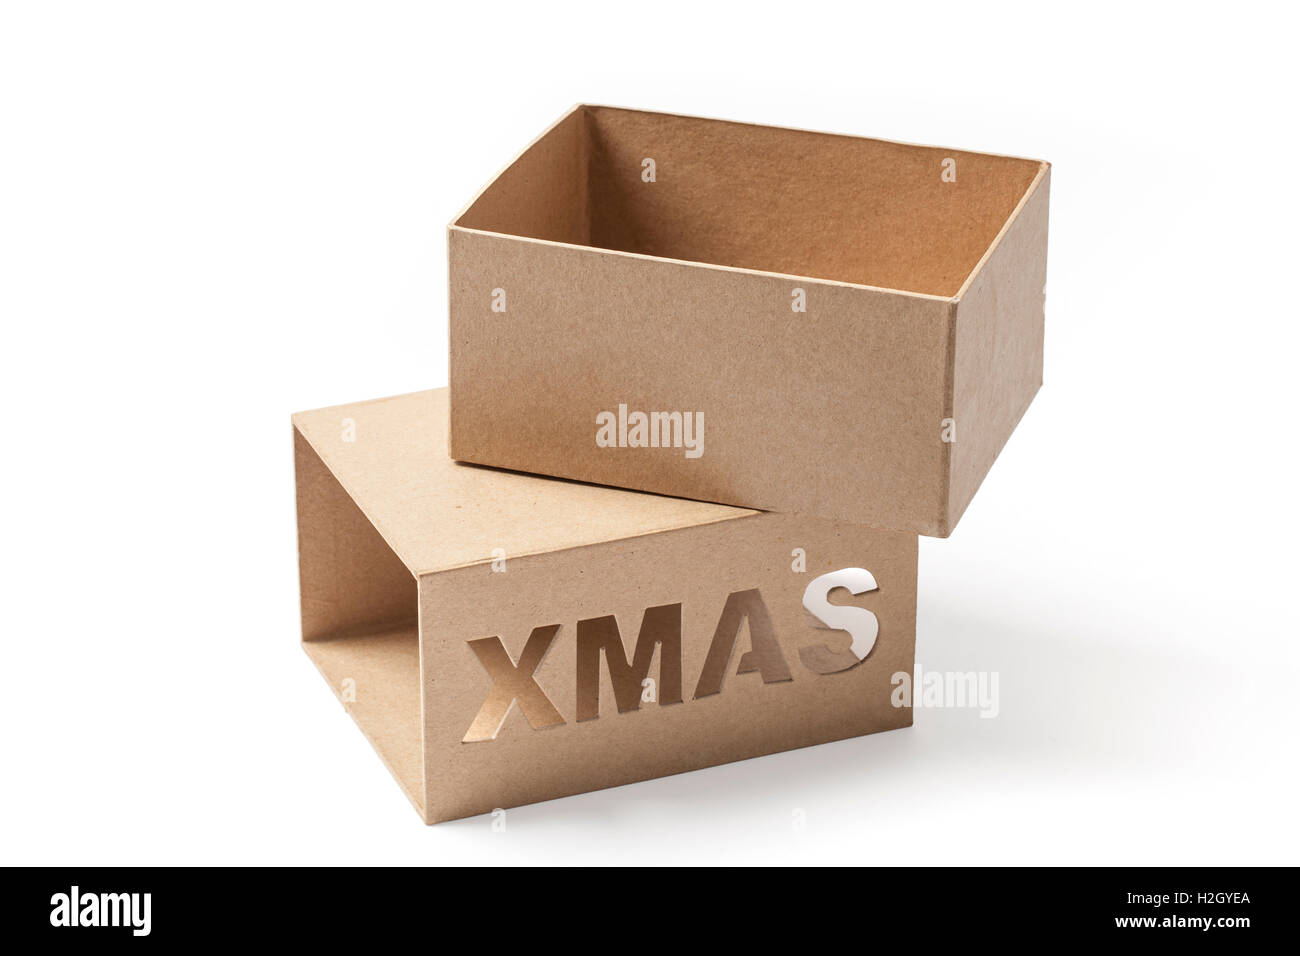 Regali Di Natale Per Due.Aprire La Scatola Di Cartone Per I Regali Di Natale In Due Parti Isolate Su Sfondo Bianco Foto Stock Alamy